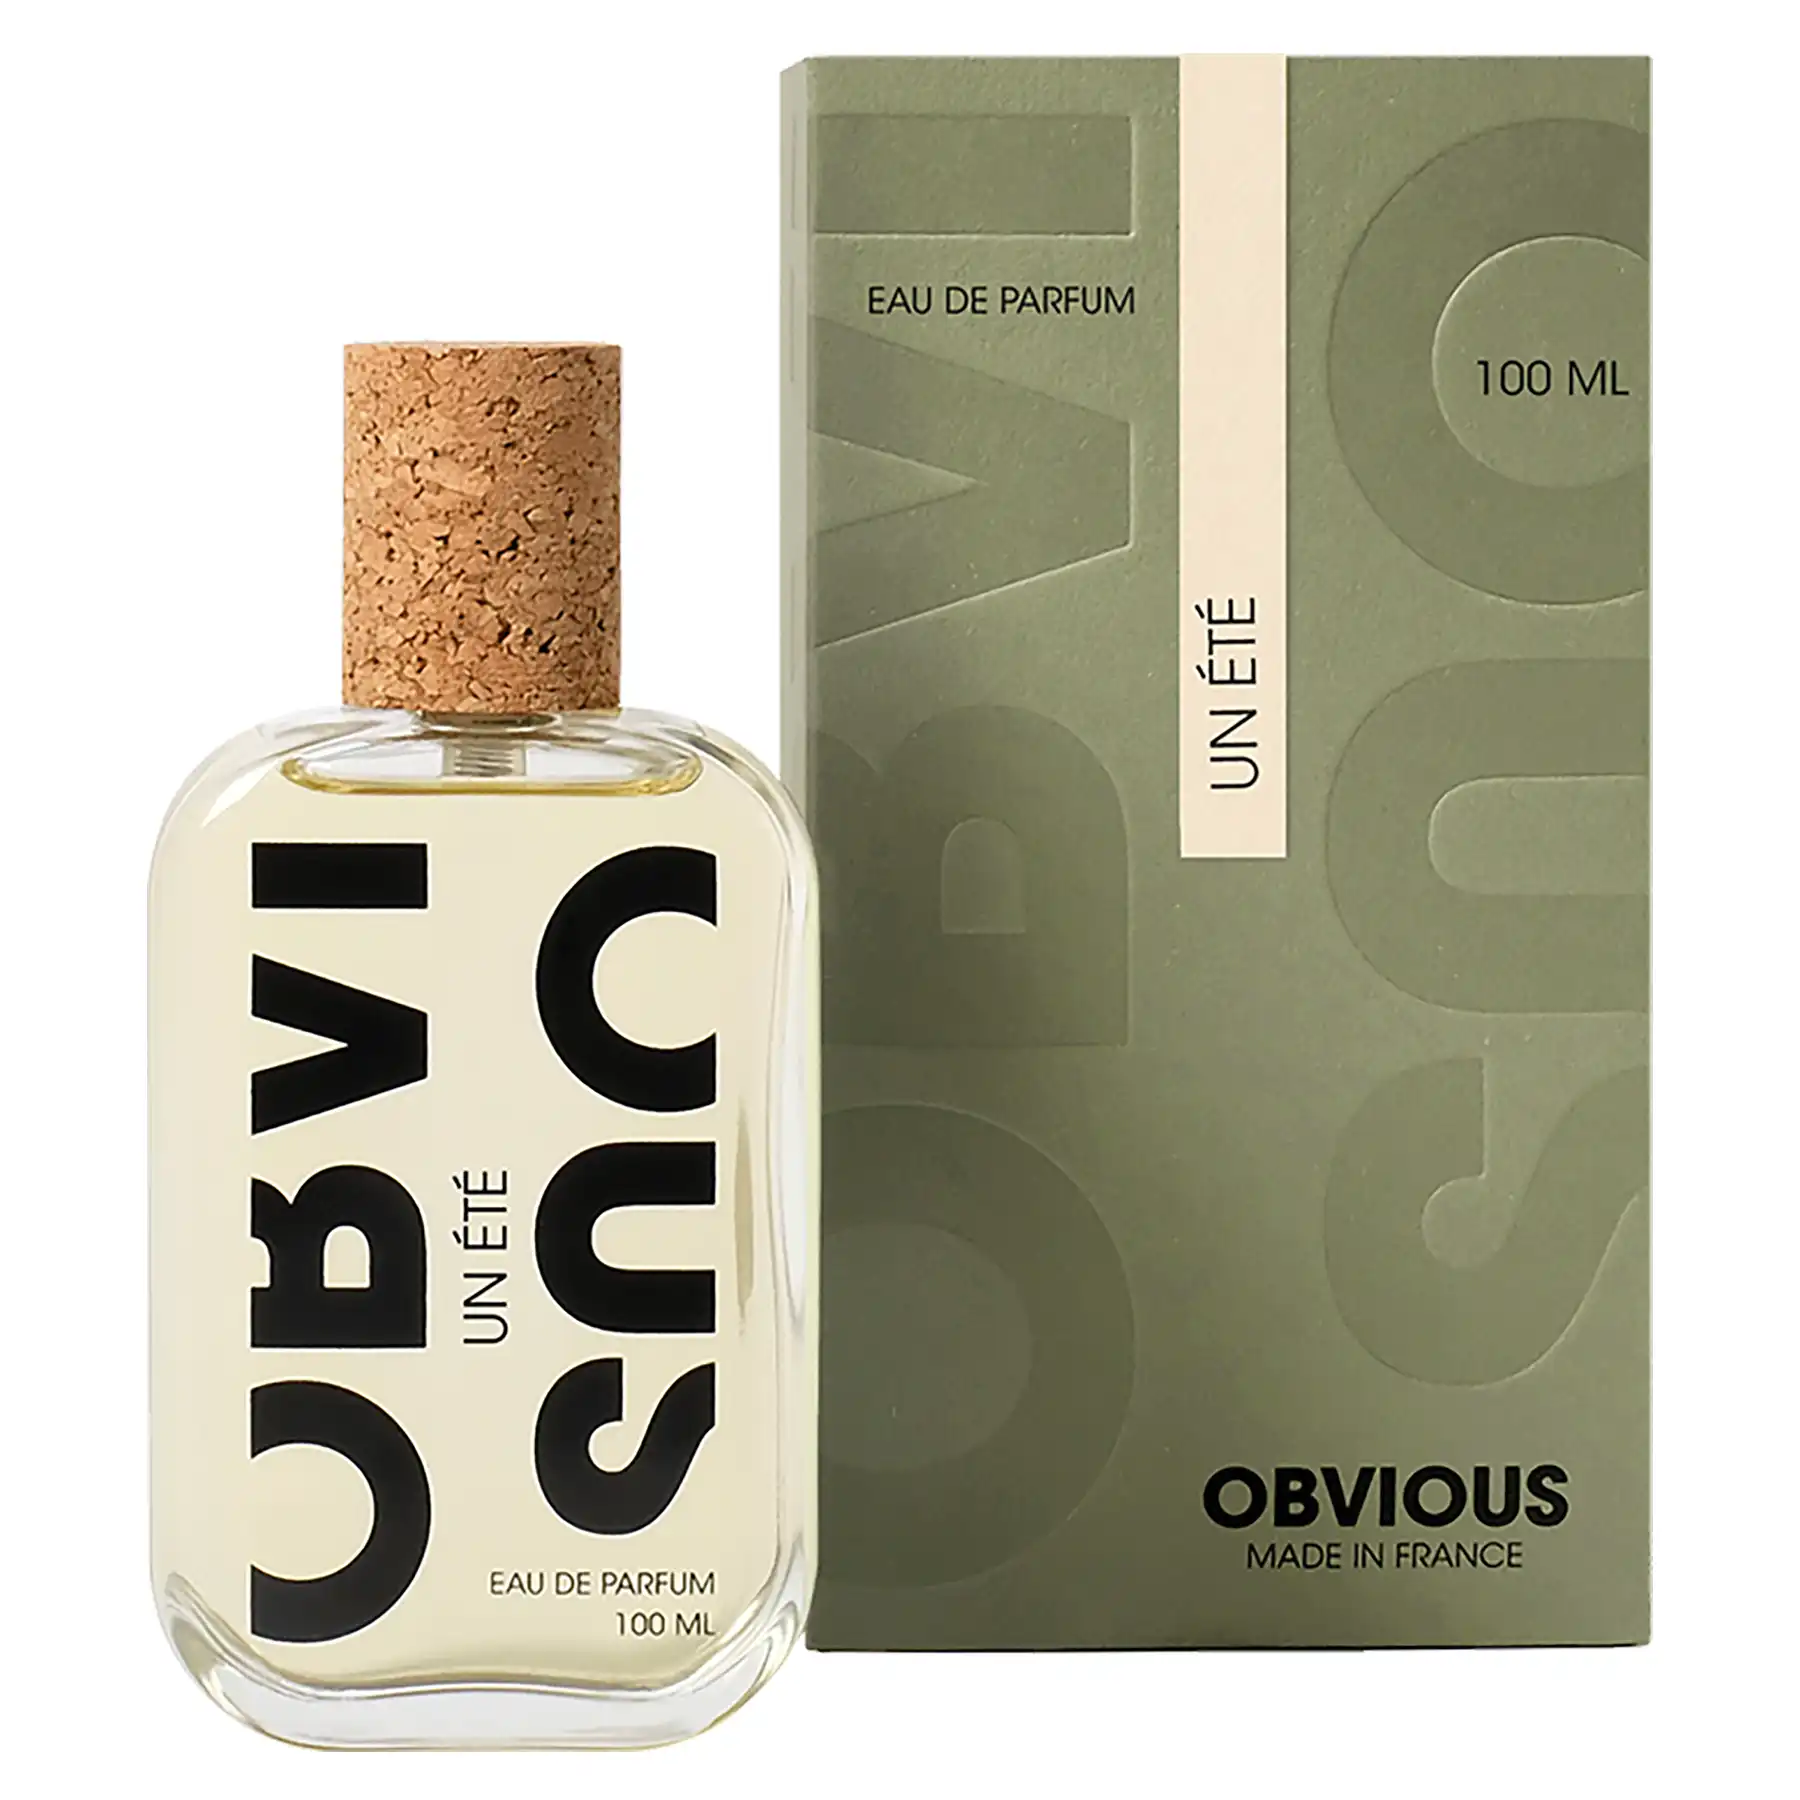 Obvious Un Été Eau de Parfum Packaging